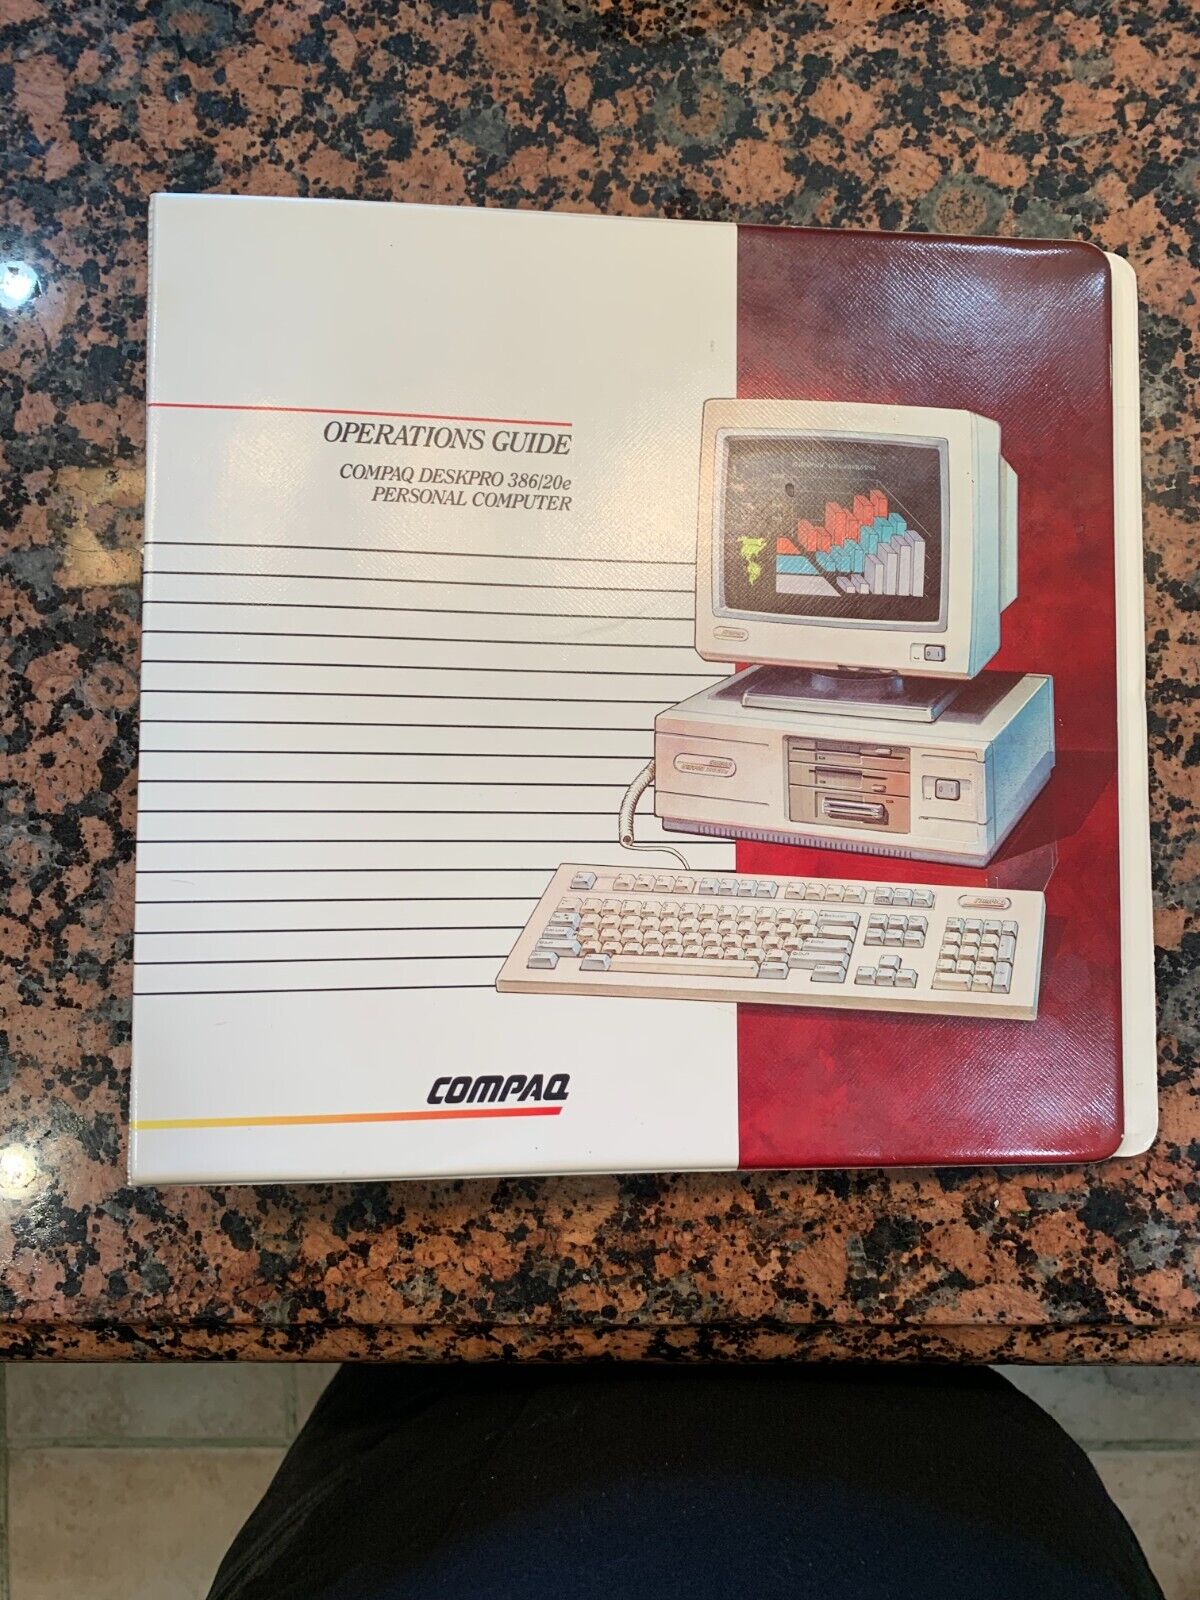 Compaq Deskpro Operations Guide 386/20e - Rare